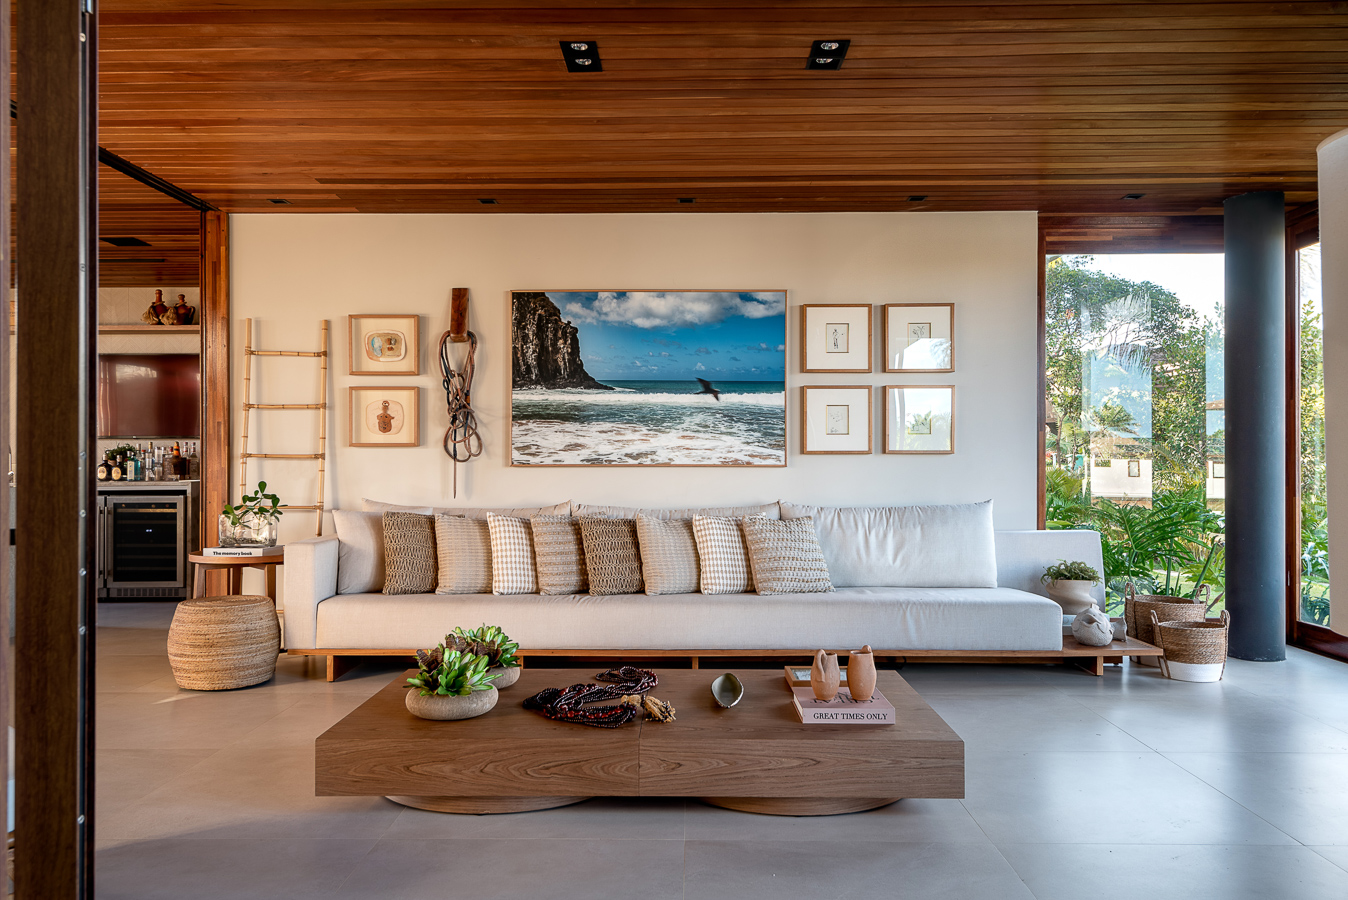 Sala aconchegante em casa de praia, com predominância de tons terrosos e elementos naturais